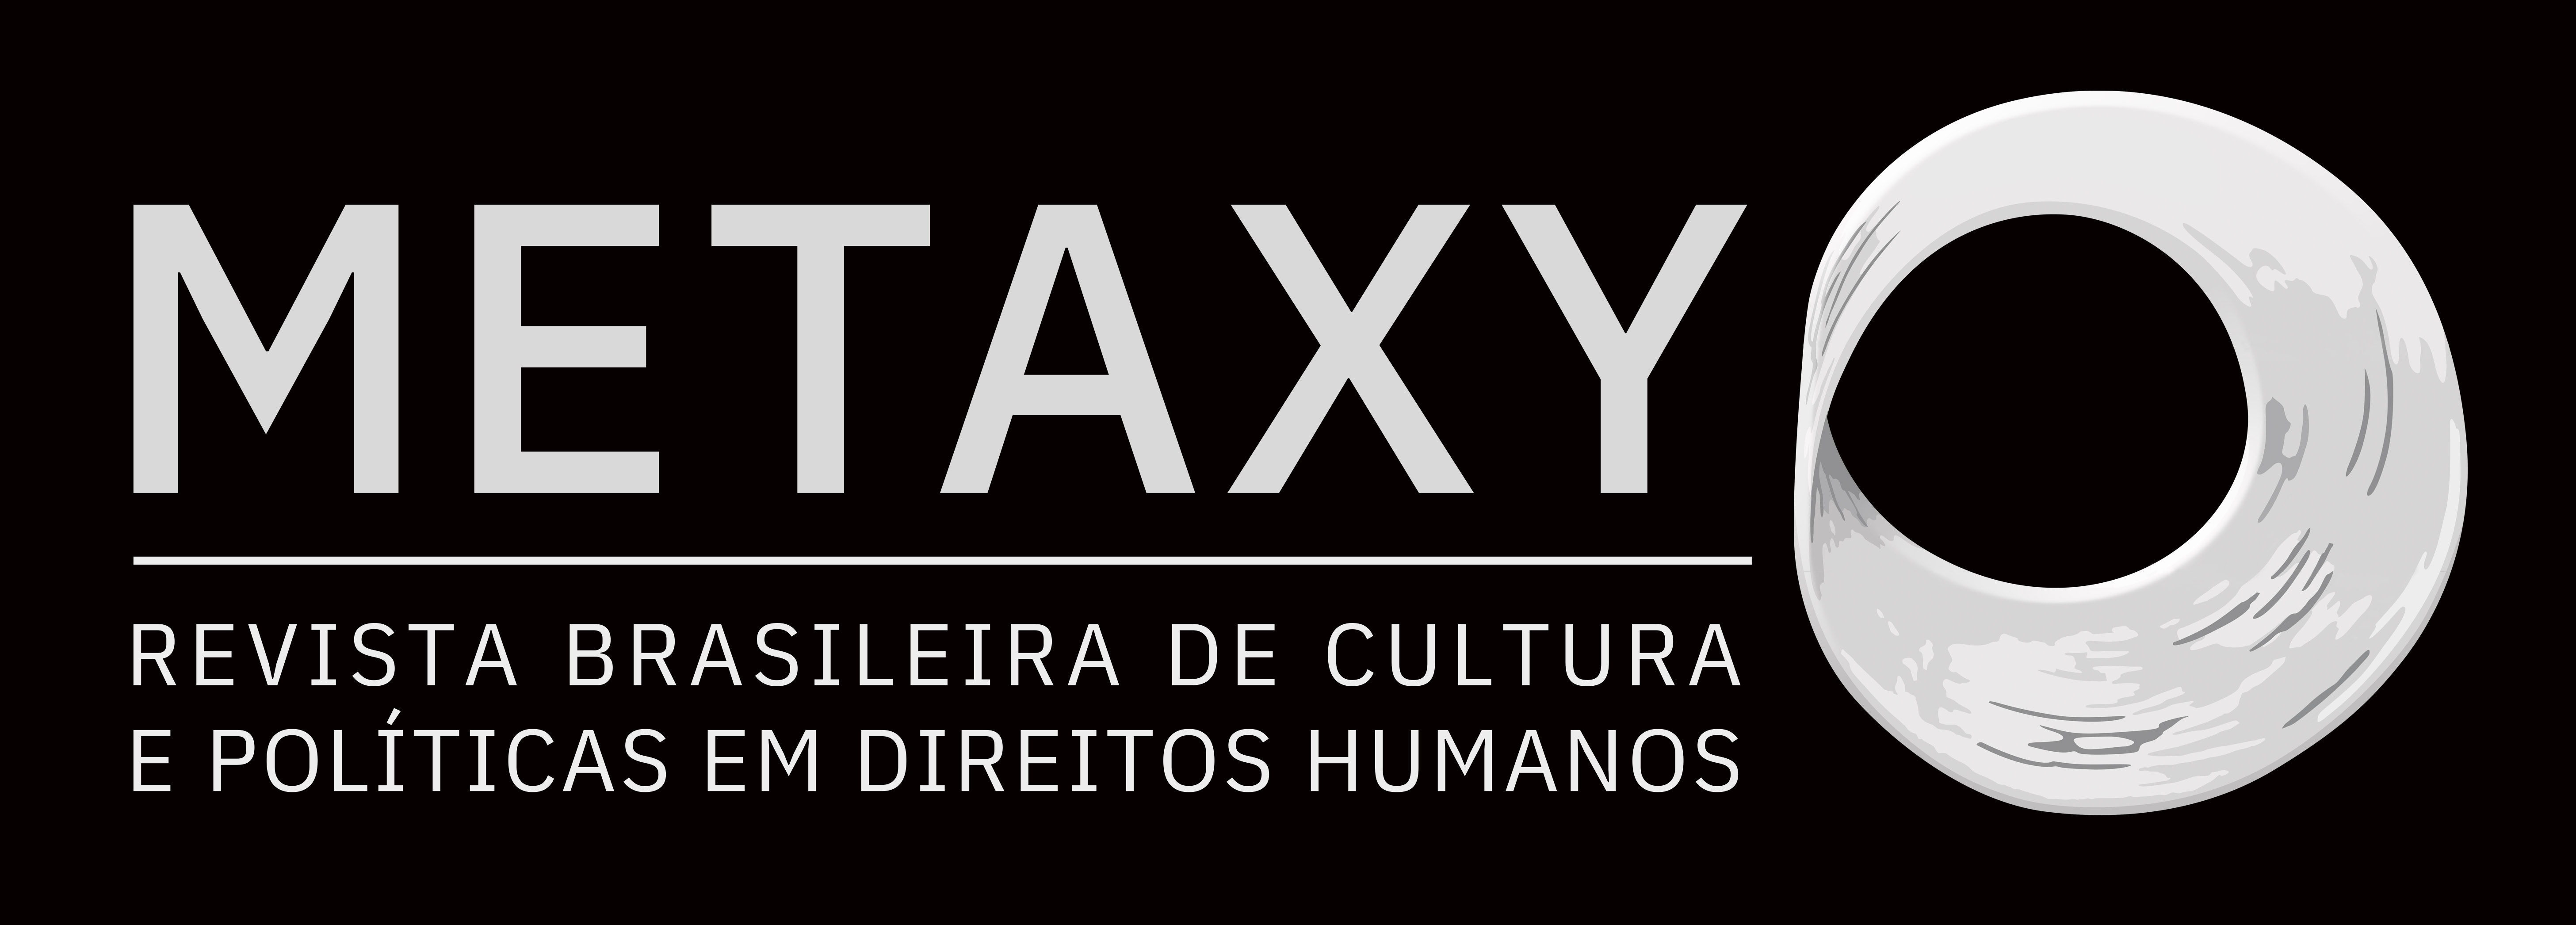 METAXY: Revista Brasileira de Cultura e Política em Direitos Humanos